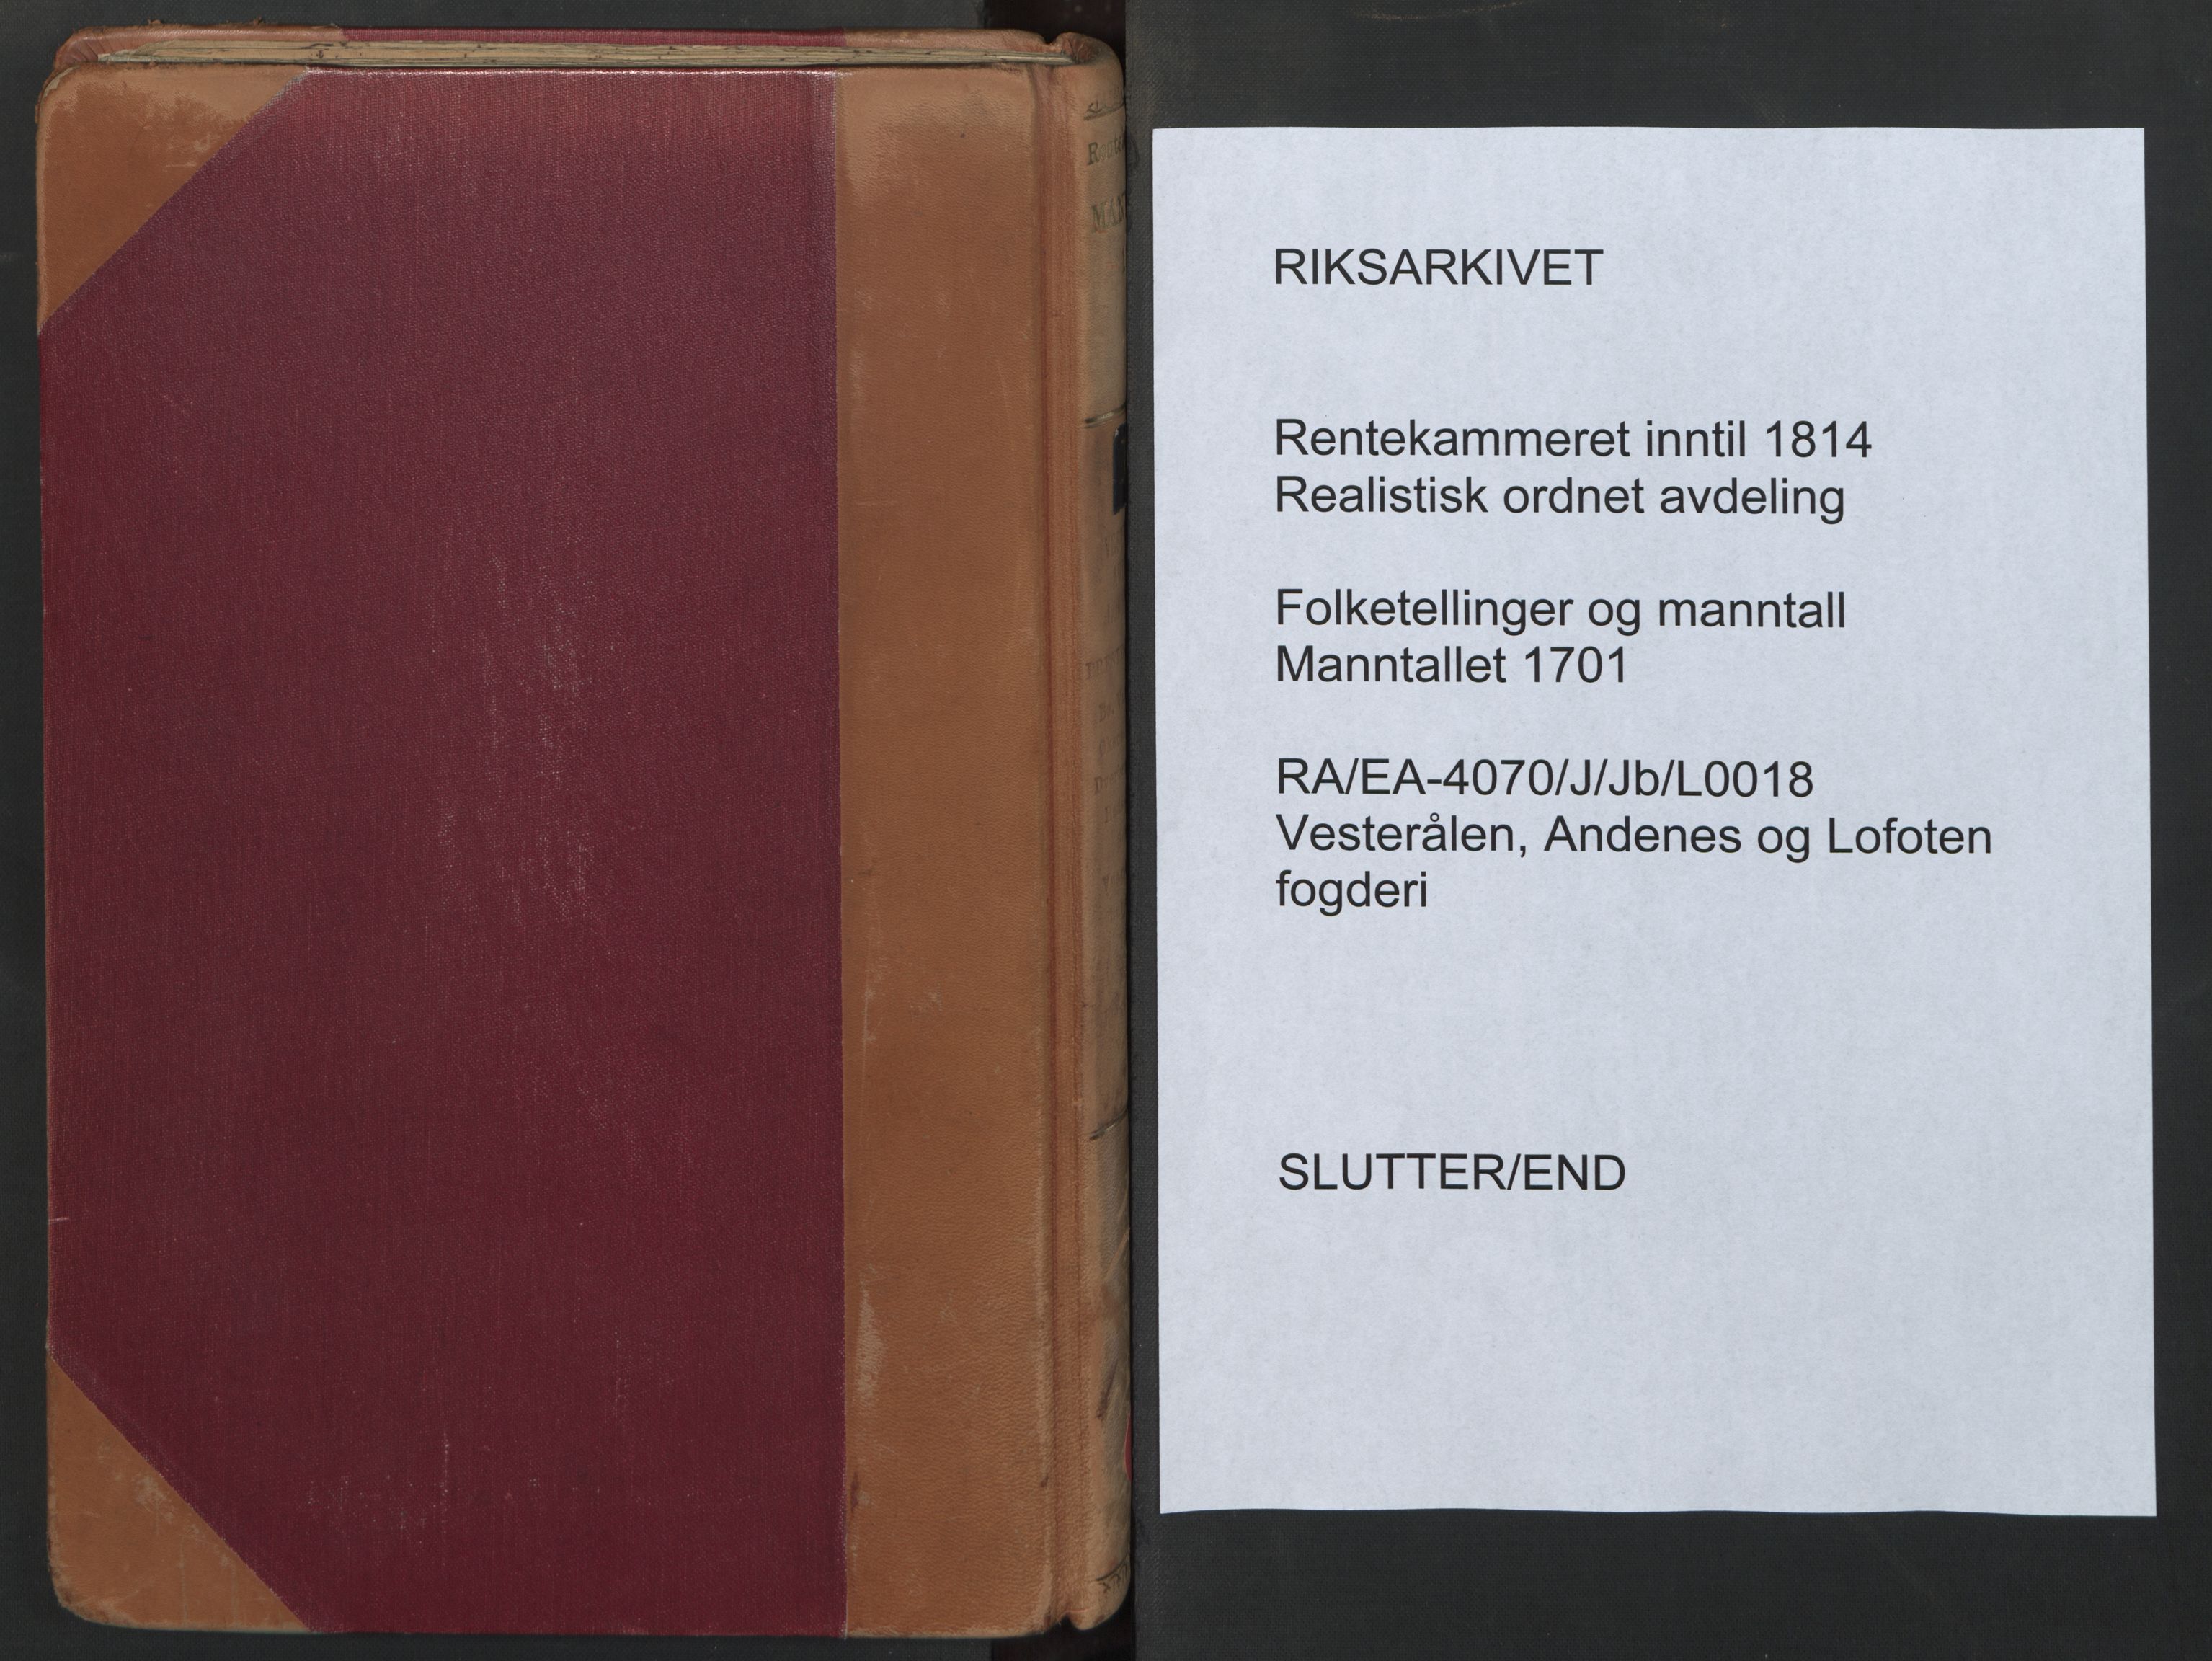 RA, Census (manntall) 1701, no. 18: Vesterålen, Andenes and Lofoten fogderi, 1701